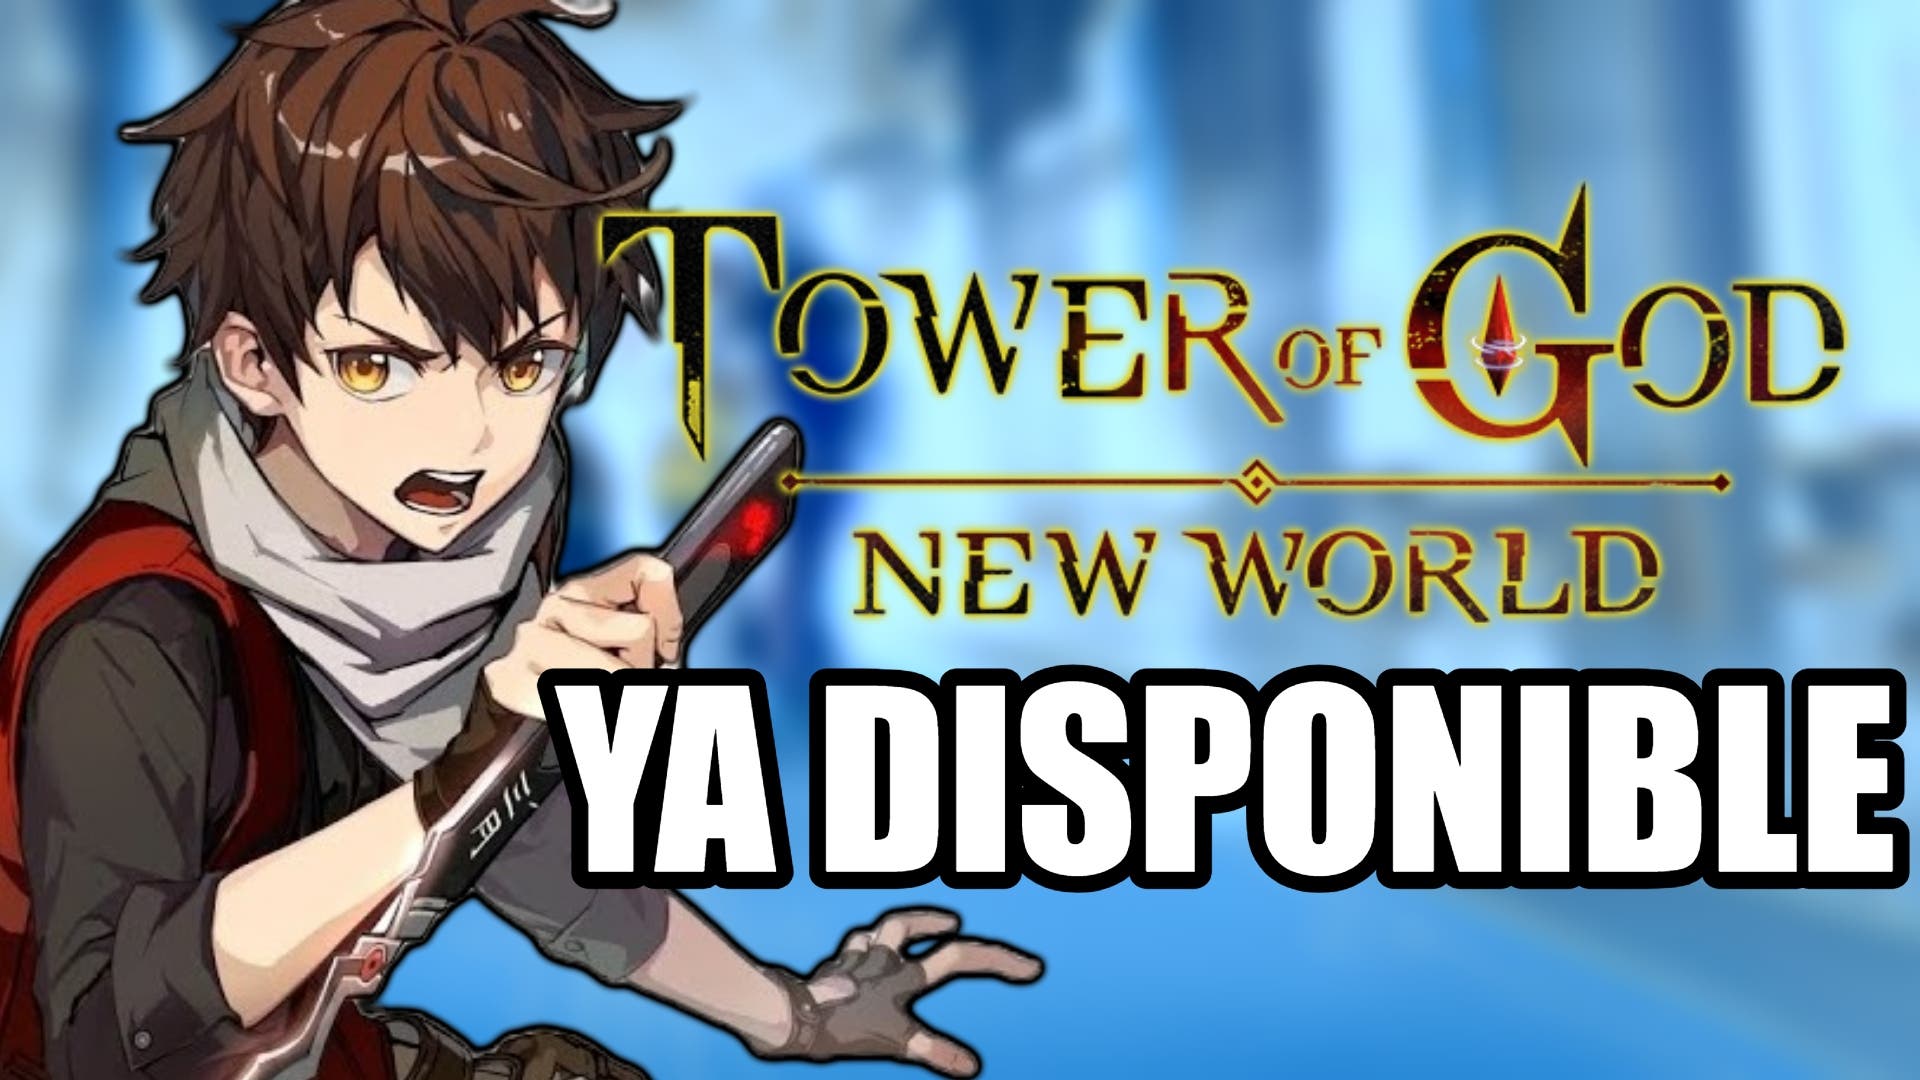 Todos os 20 Personagens Disponíveis No game Tower of God New World 